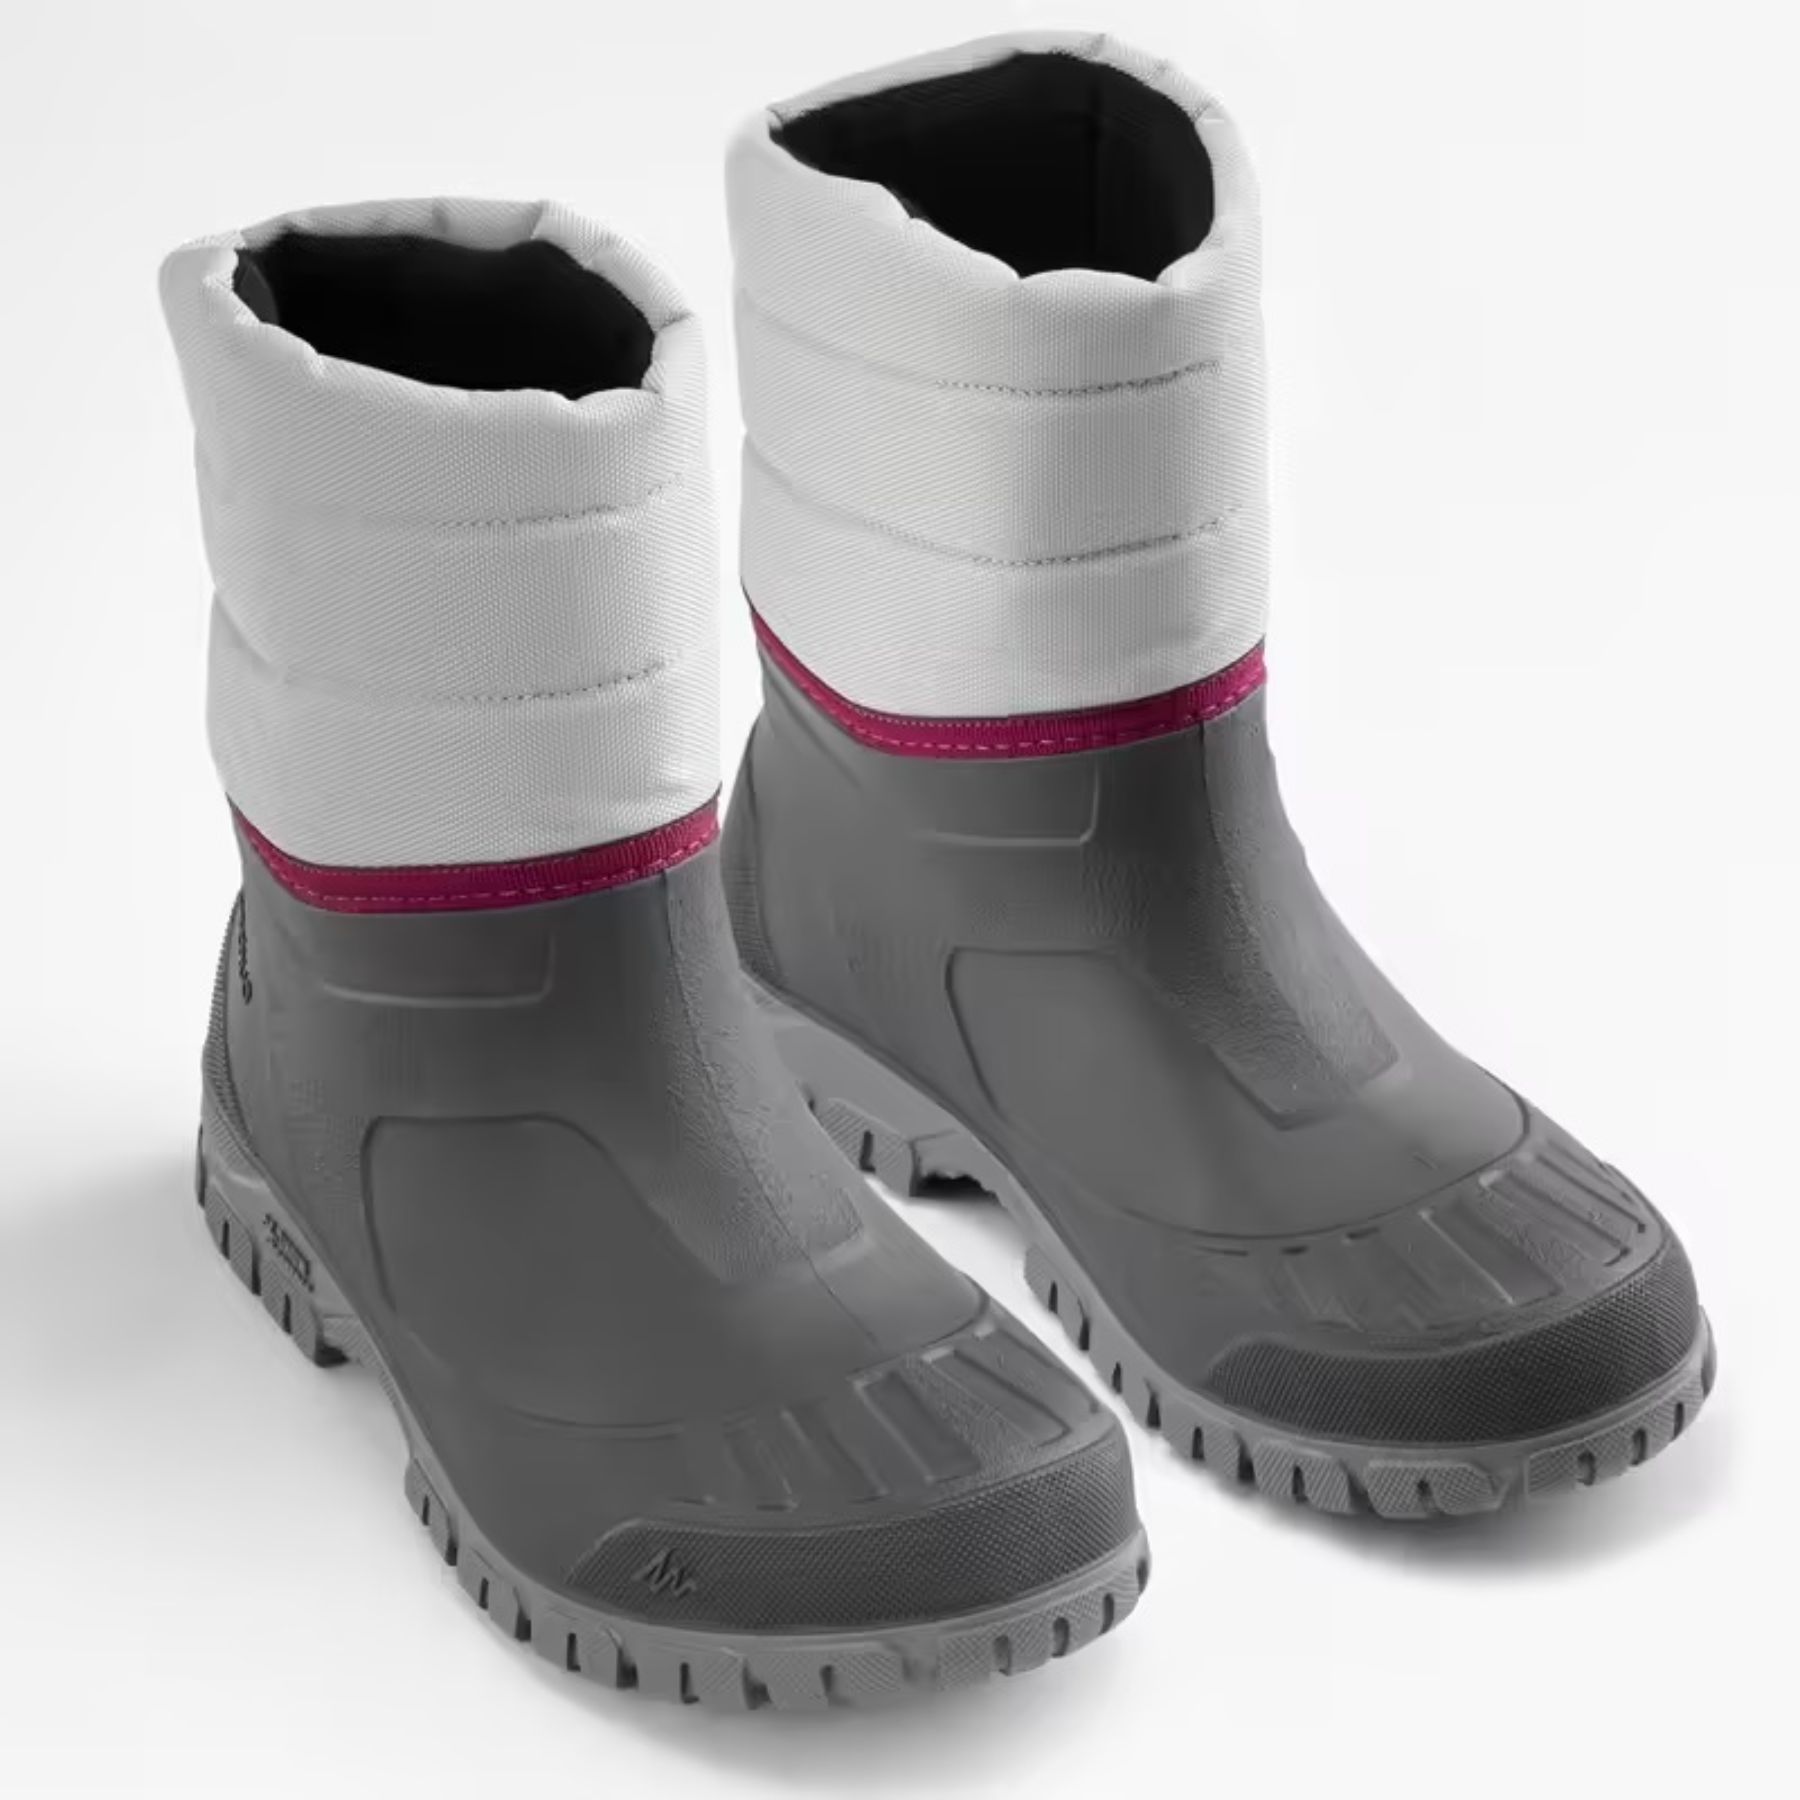 Son las botas de nieve y apreski impermeables más vendidas del